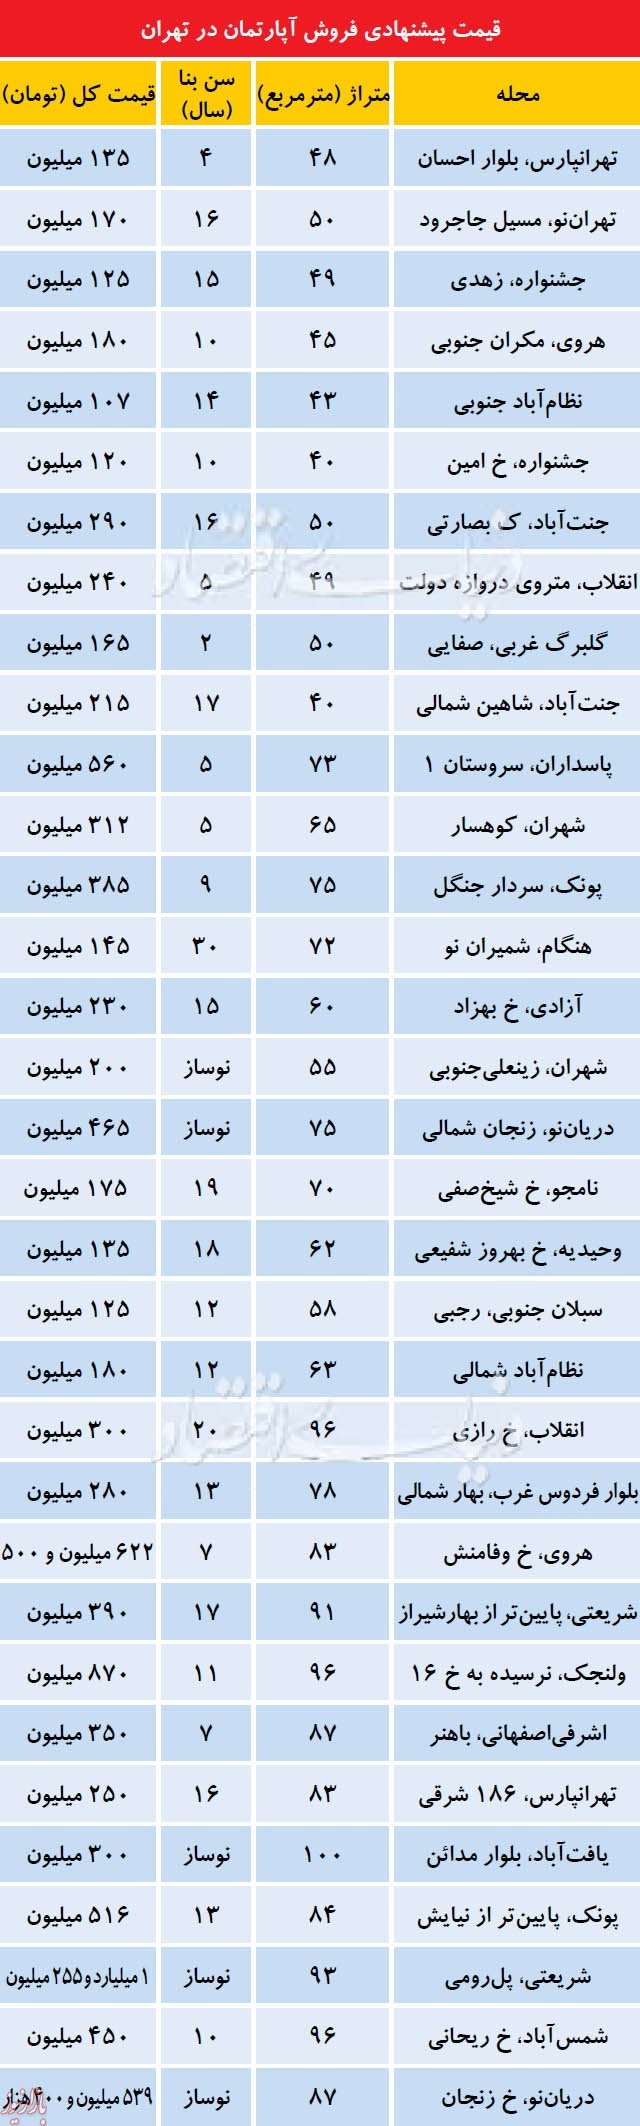 نرخ خانه های ۴۰تا۱۰۰متر در نقاط مختلف تهران +جدول